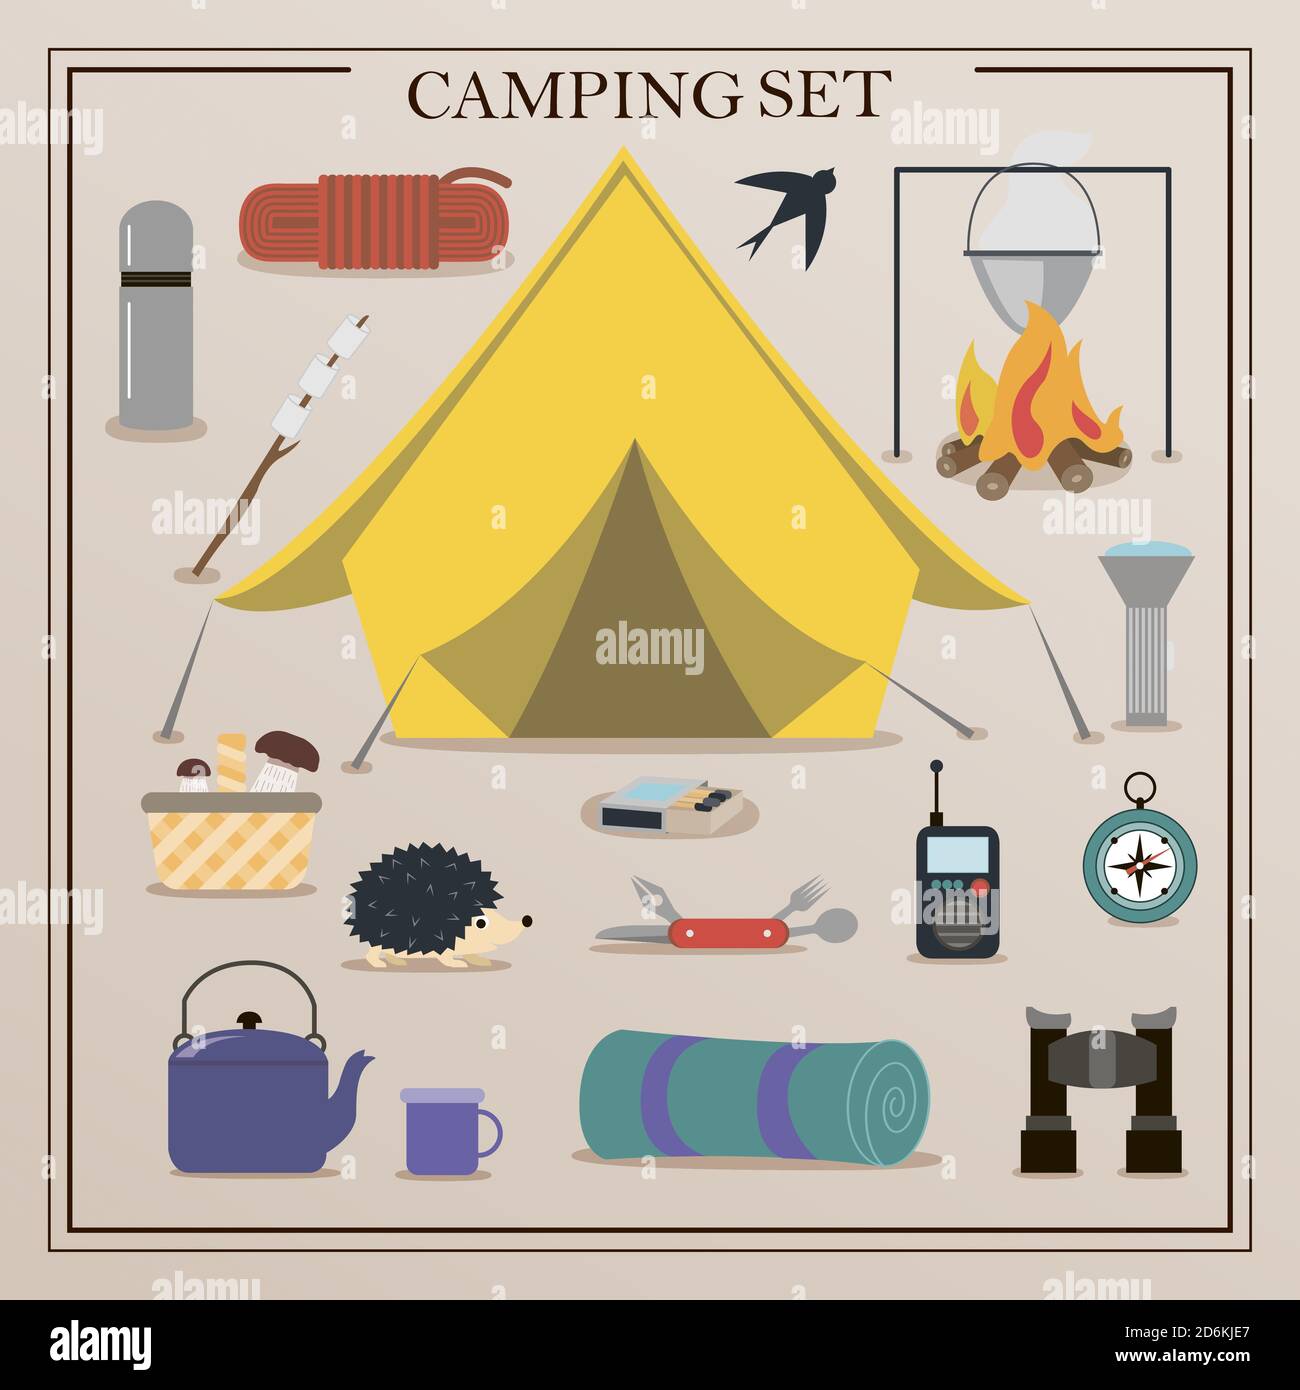 https://c8.alamy.com/compit/2d6kje7/una-serie-di-icone-piatte-per-il-campeggio-attrezzature-per-escursioni-alpinismo-e-campeggio-un-insieme-di-icone-e-infografiche-casa-dell-albero-tenda-utensili-da-campeggio-zaino-e-attrezzi-scout-2d6kje7.jpg